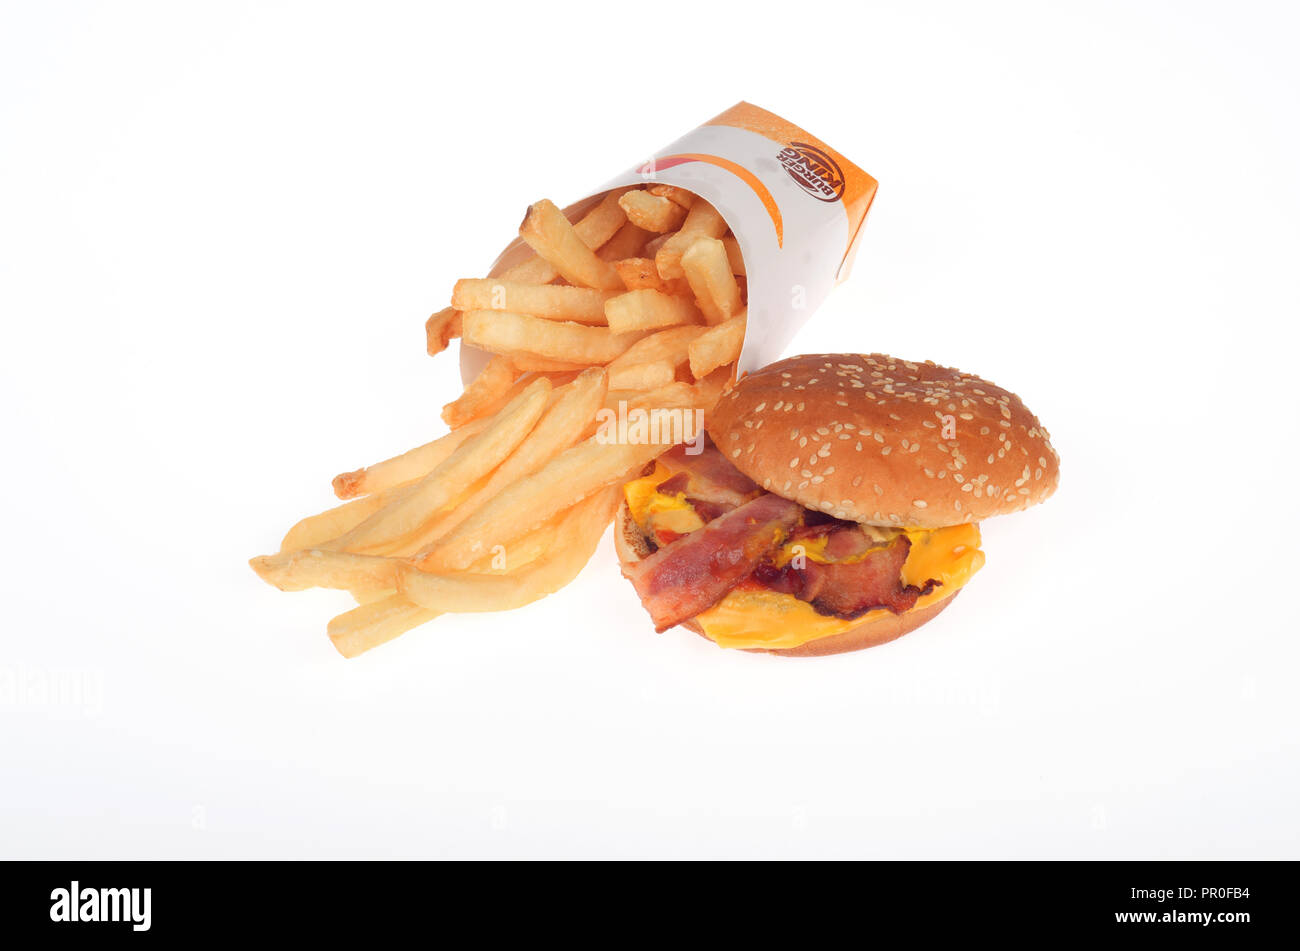 Burger King bacon cheeseburger et frites sur fond blanc Banque D'Images